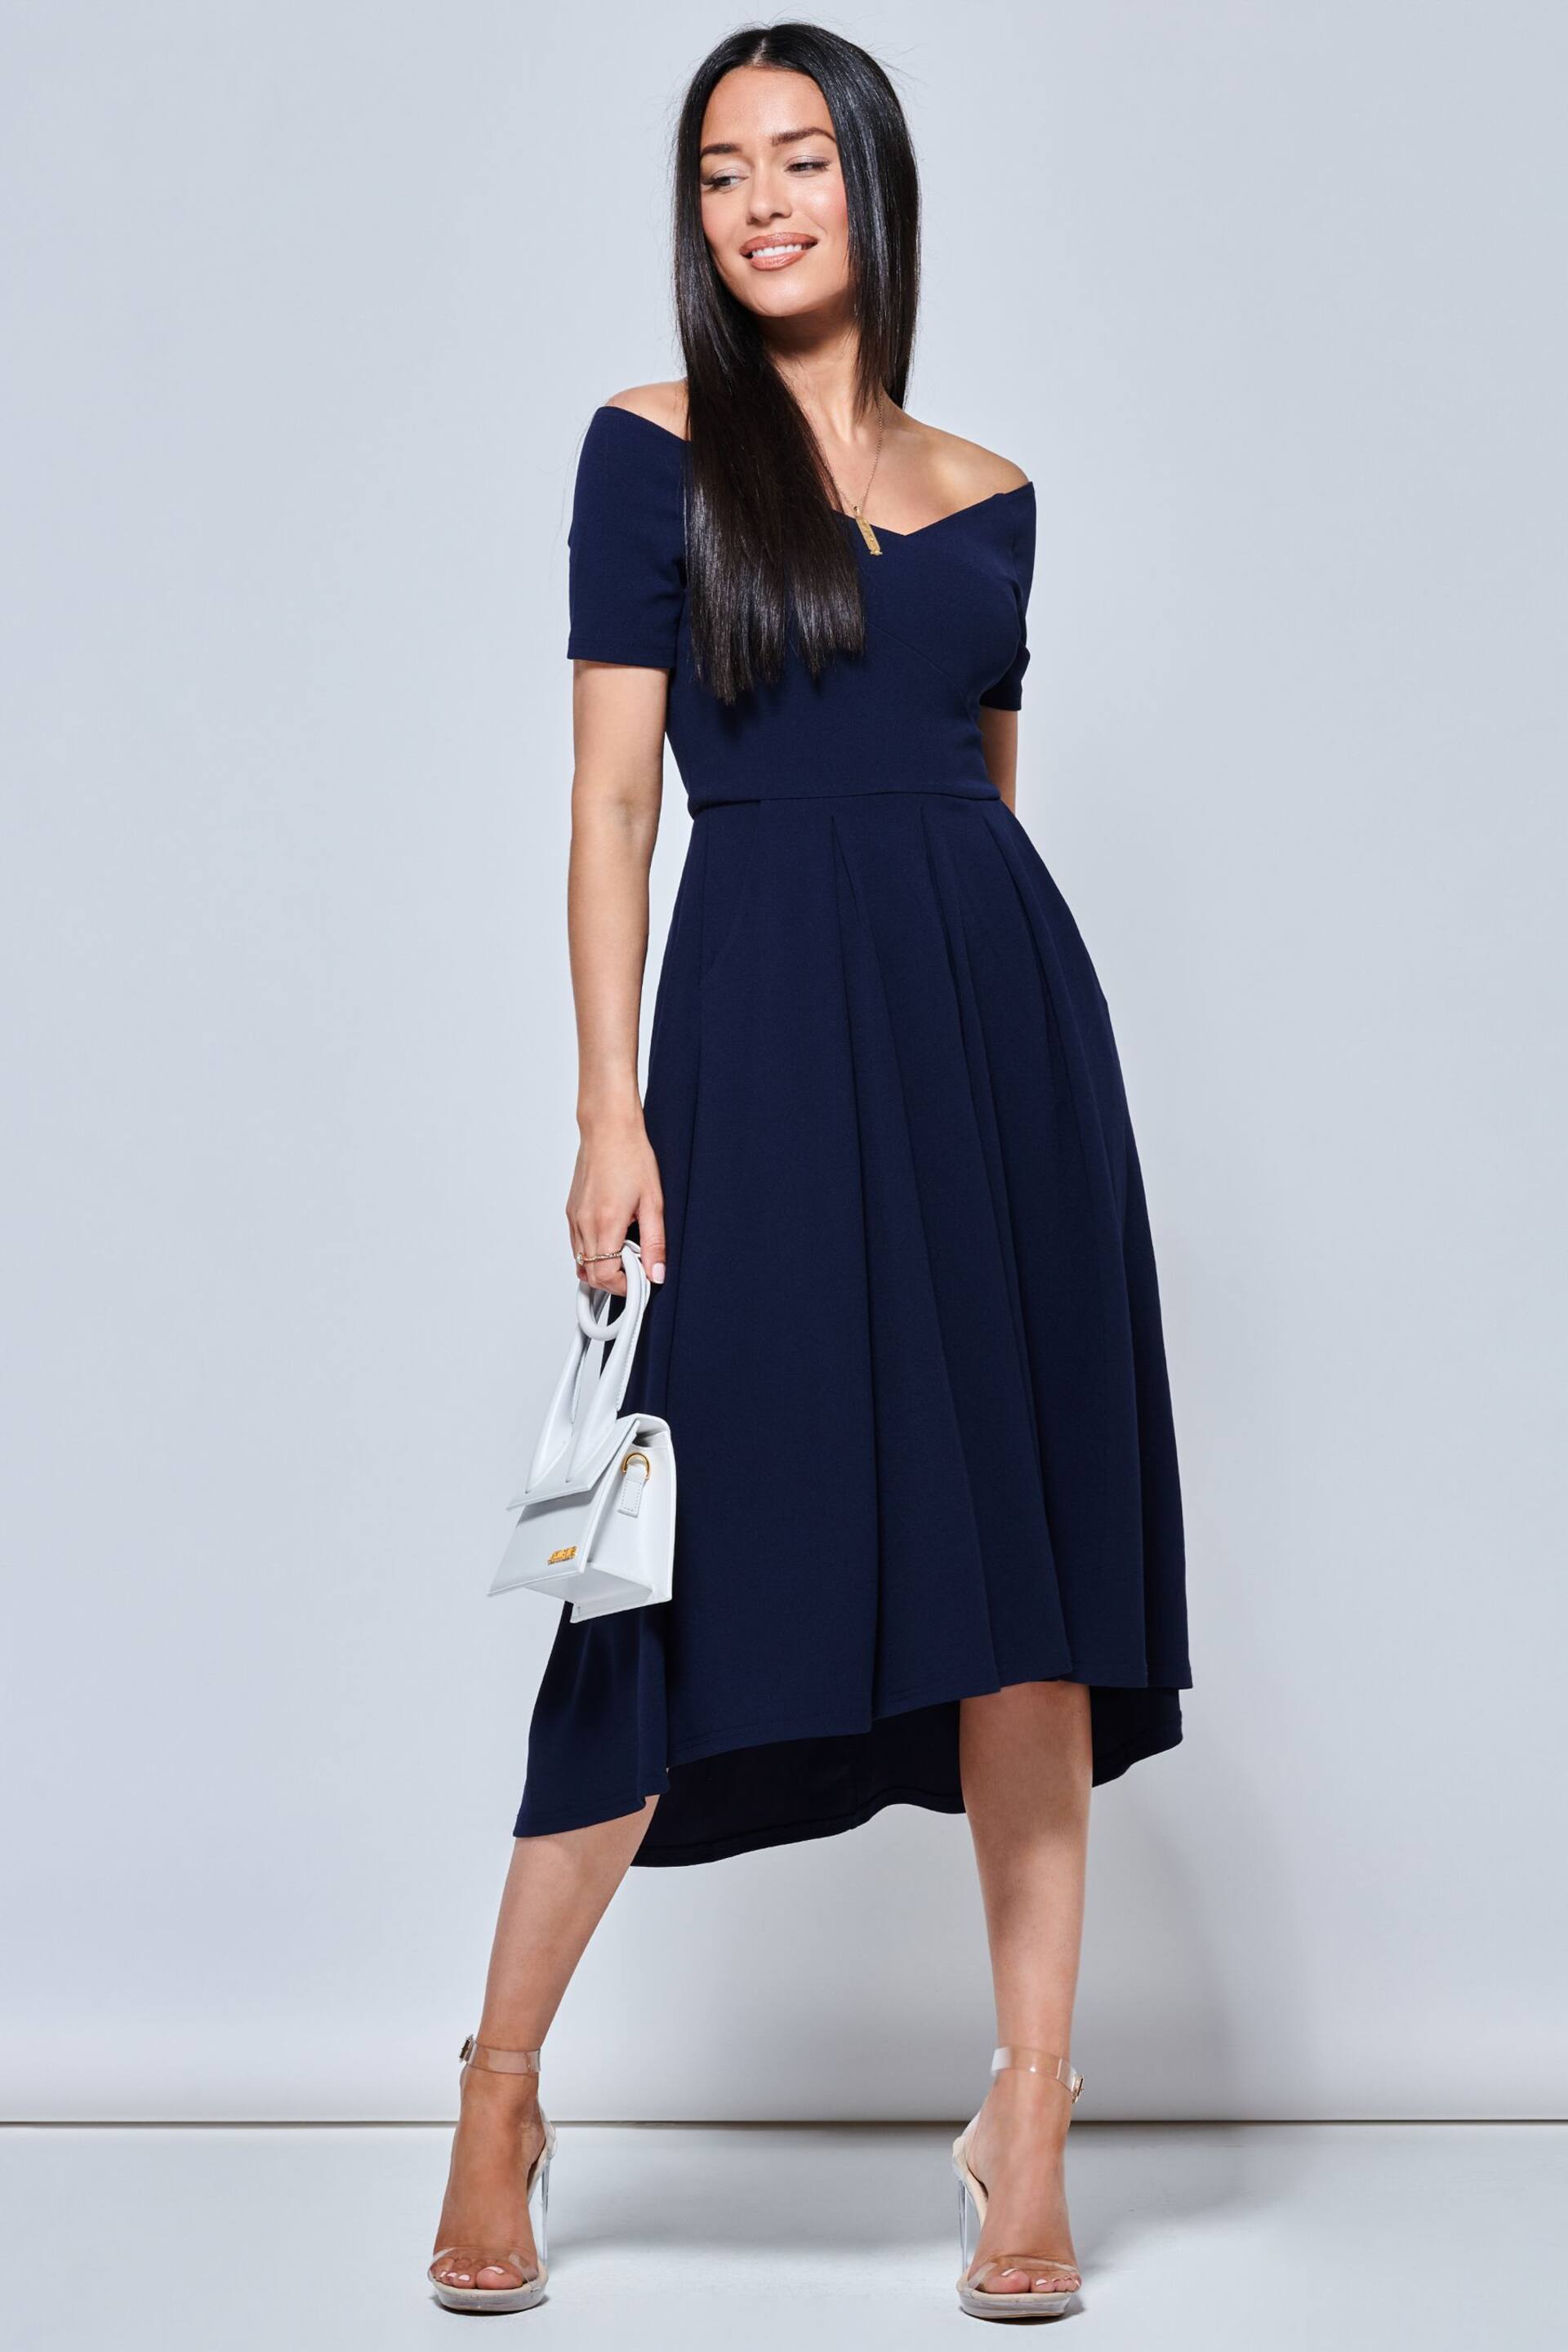 Jolie Moi Navy Blue Lenora Fit & Flare Midi Dress - Image 4 of 5